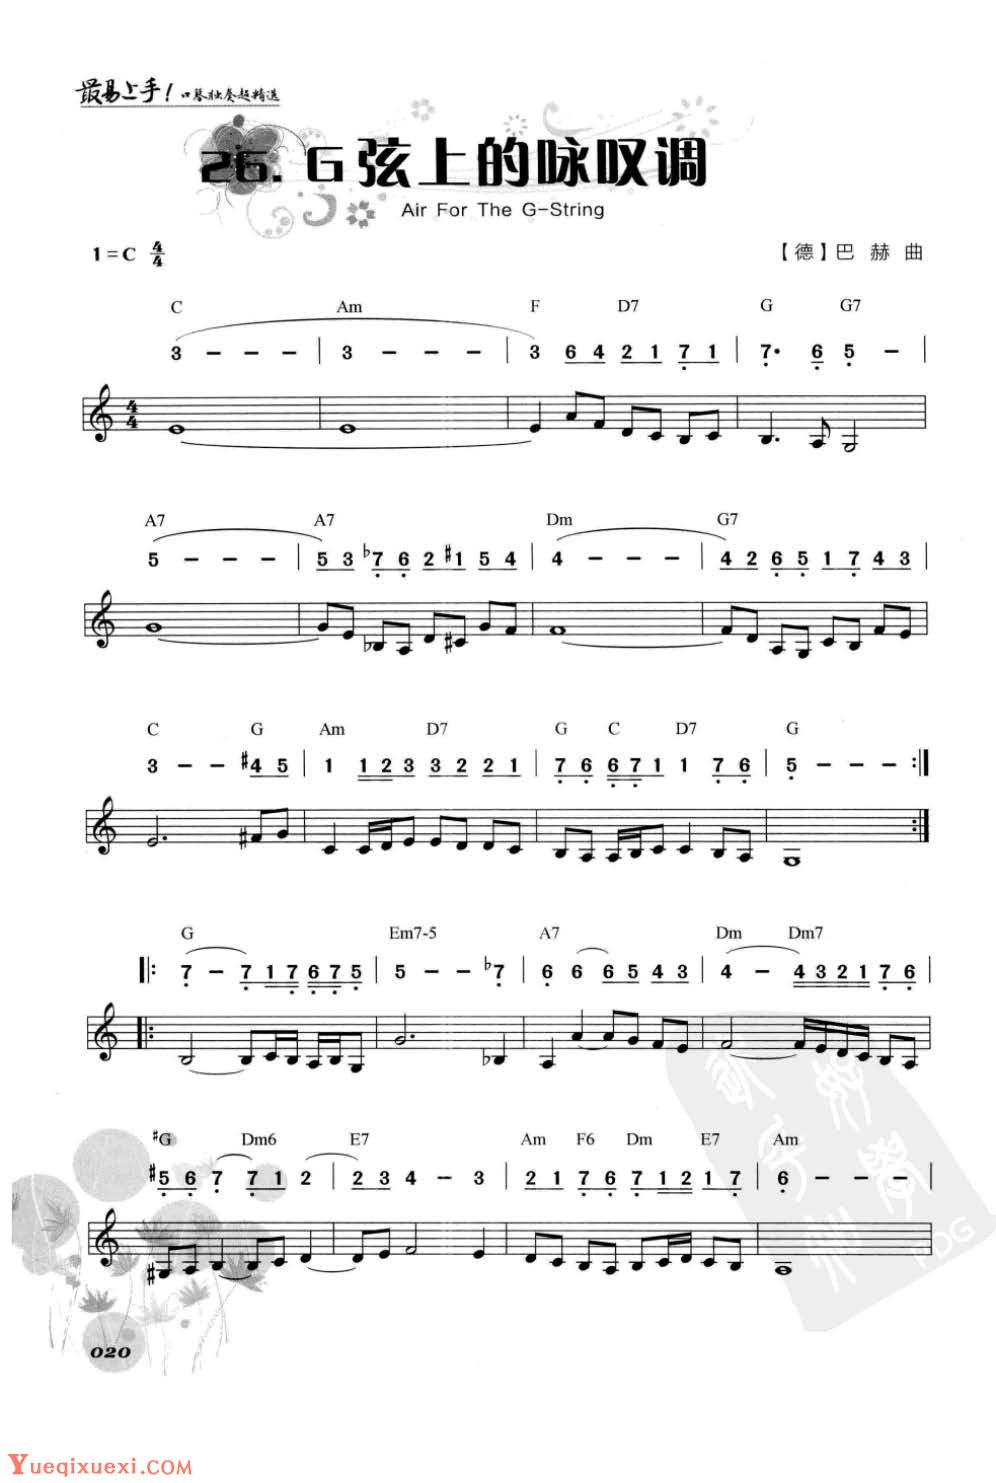 口琴古典名曲《G弦上的咏叹调》简谱与五线谱对照